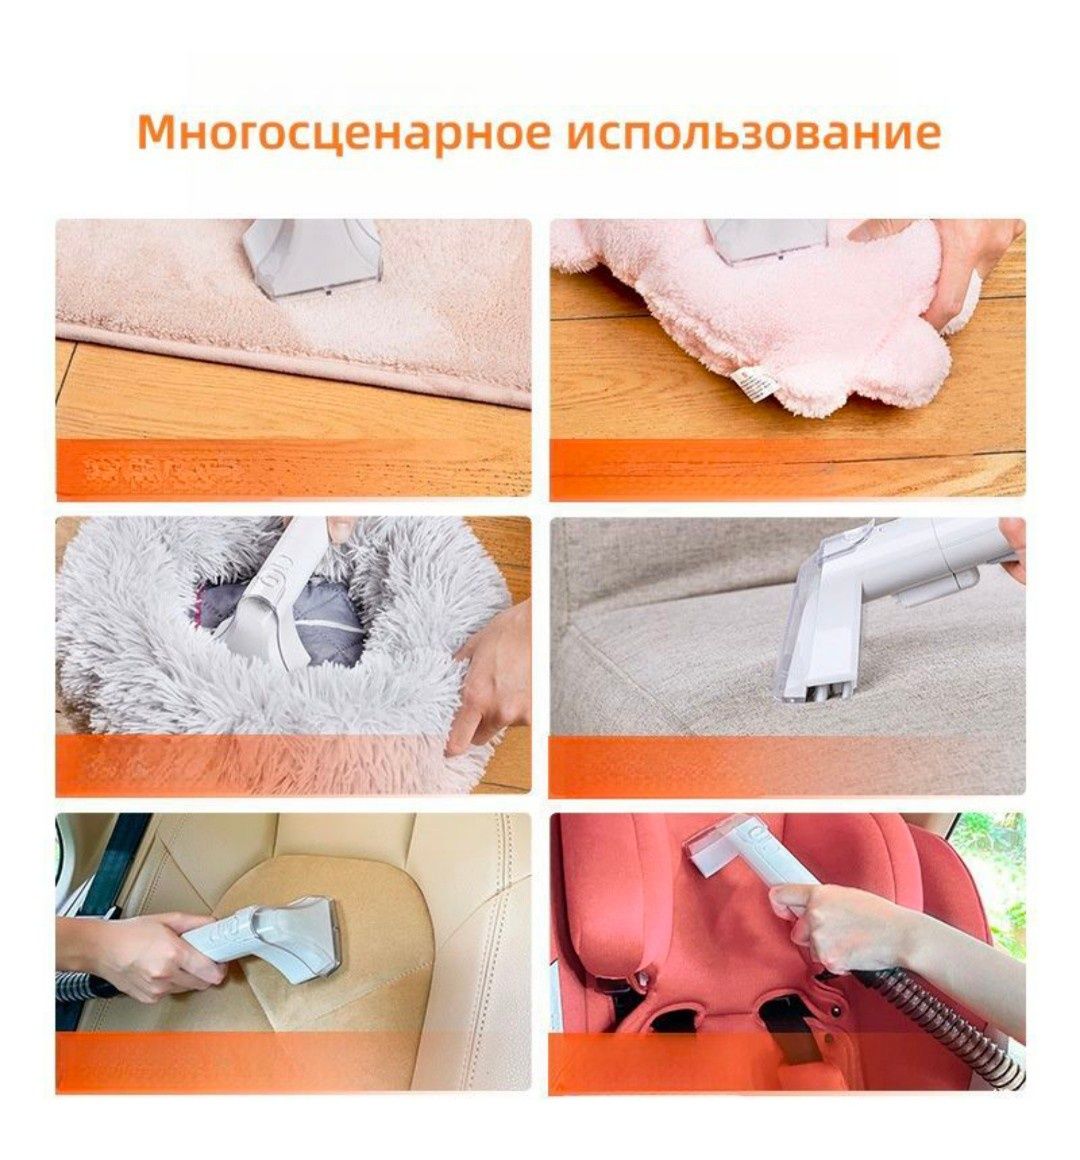 Моющий мощный пылесос YILI для чистки ковров, дивана, матрасов и т.д